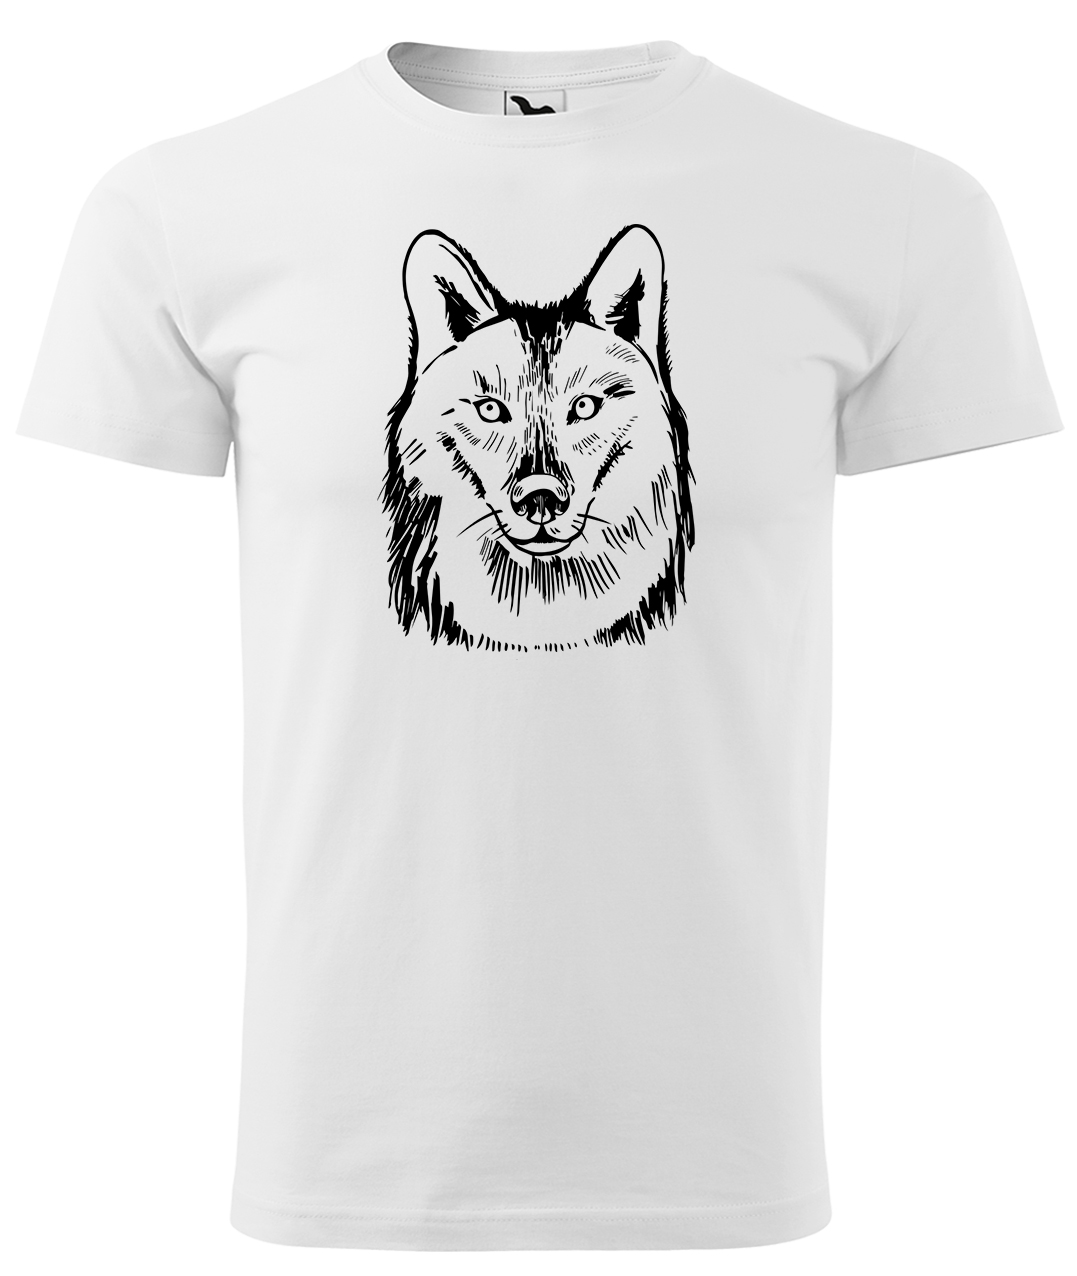 Dětské tričko s vlkem - Kresba vlka Velikost: 10 let / 146 cm, Barva: Bílá (00), Délka rukávu: Krátký rukáv